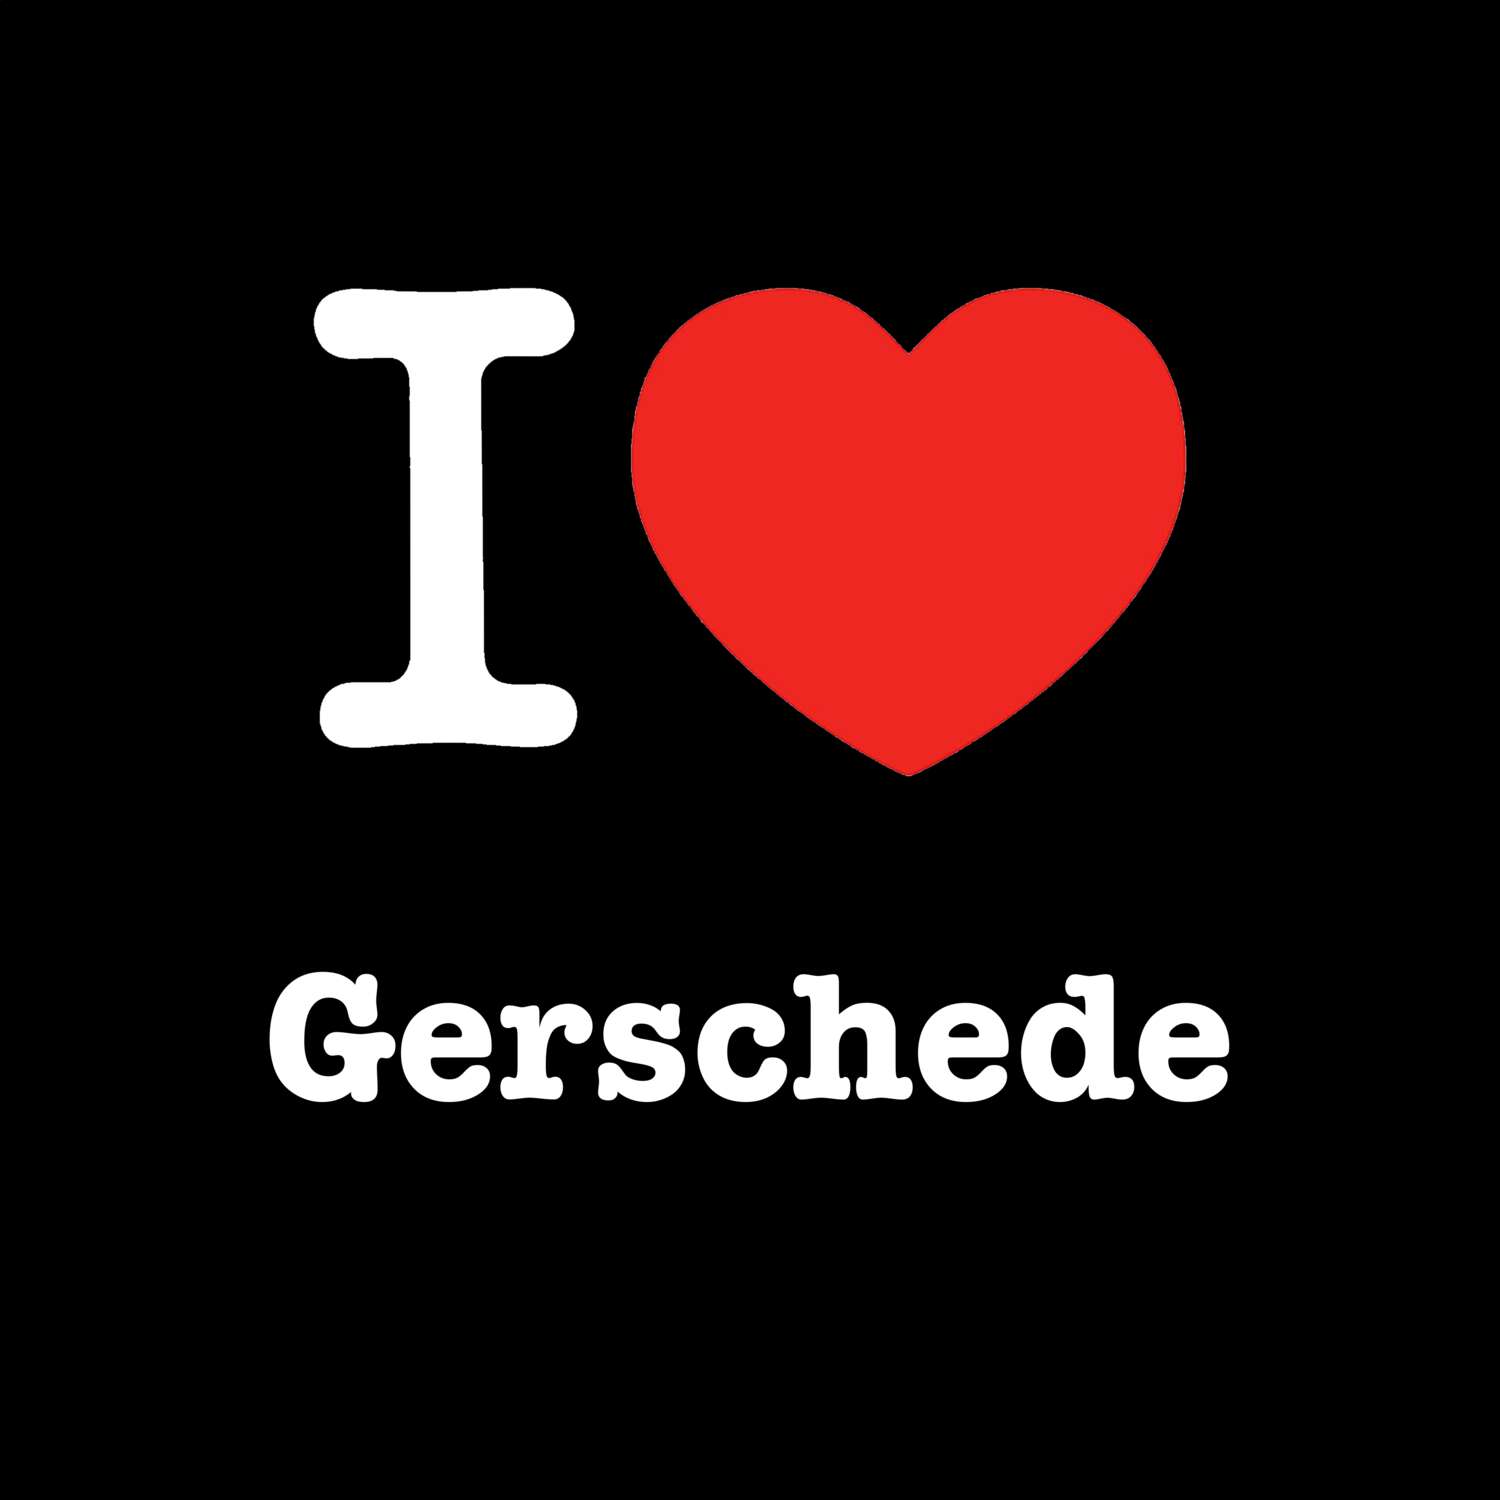 Gerschede T-Shirt »I love«